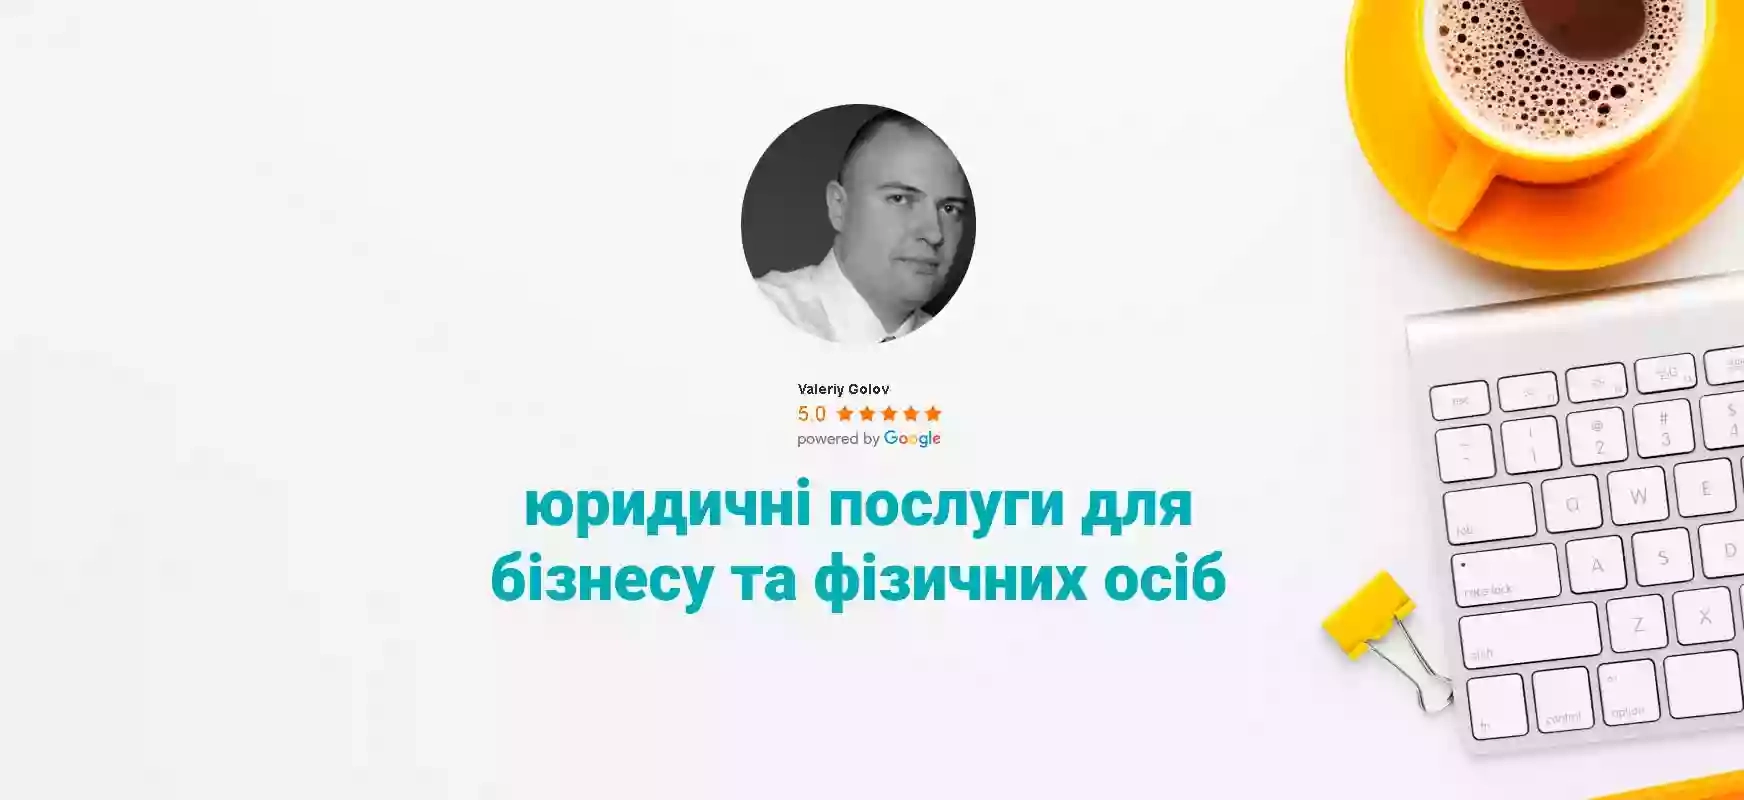 Valeriy Golov